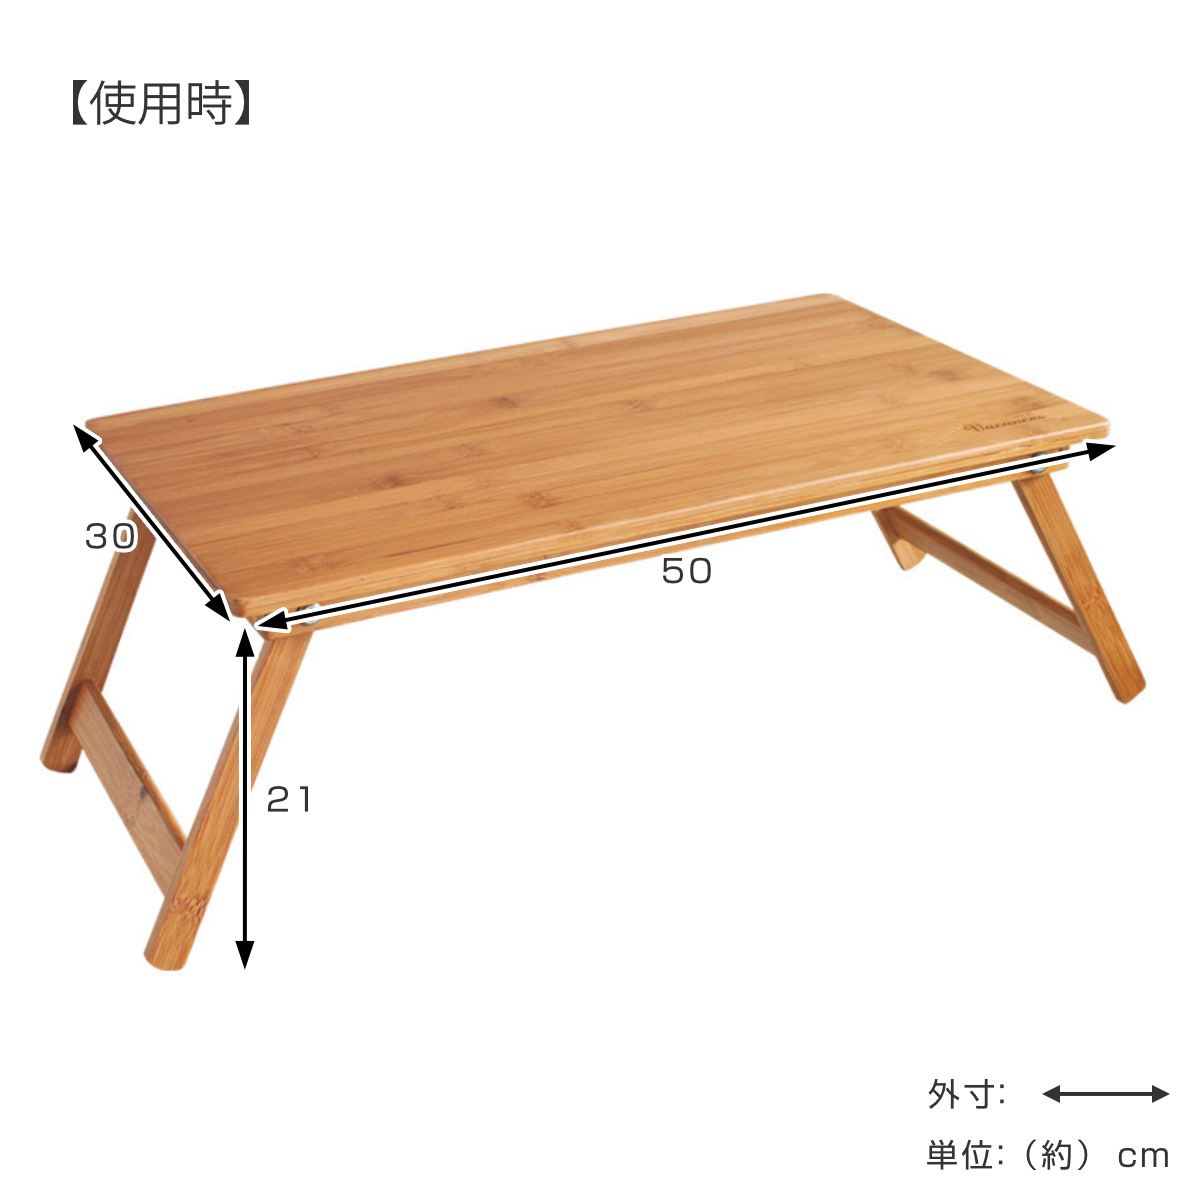 楽天市場折りたたみテーブル バンブーテーブル バカンス 竹製 ロー